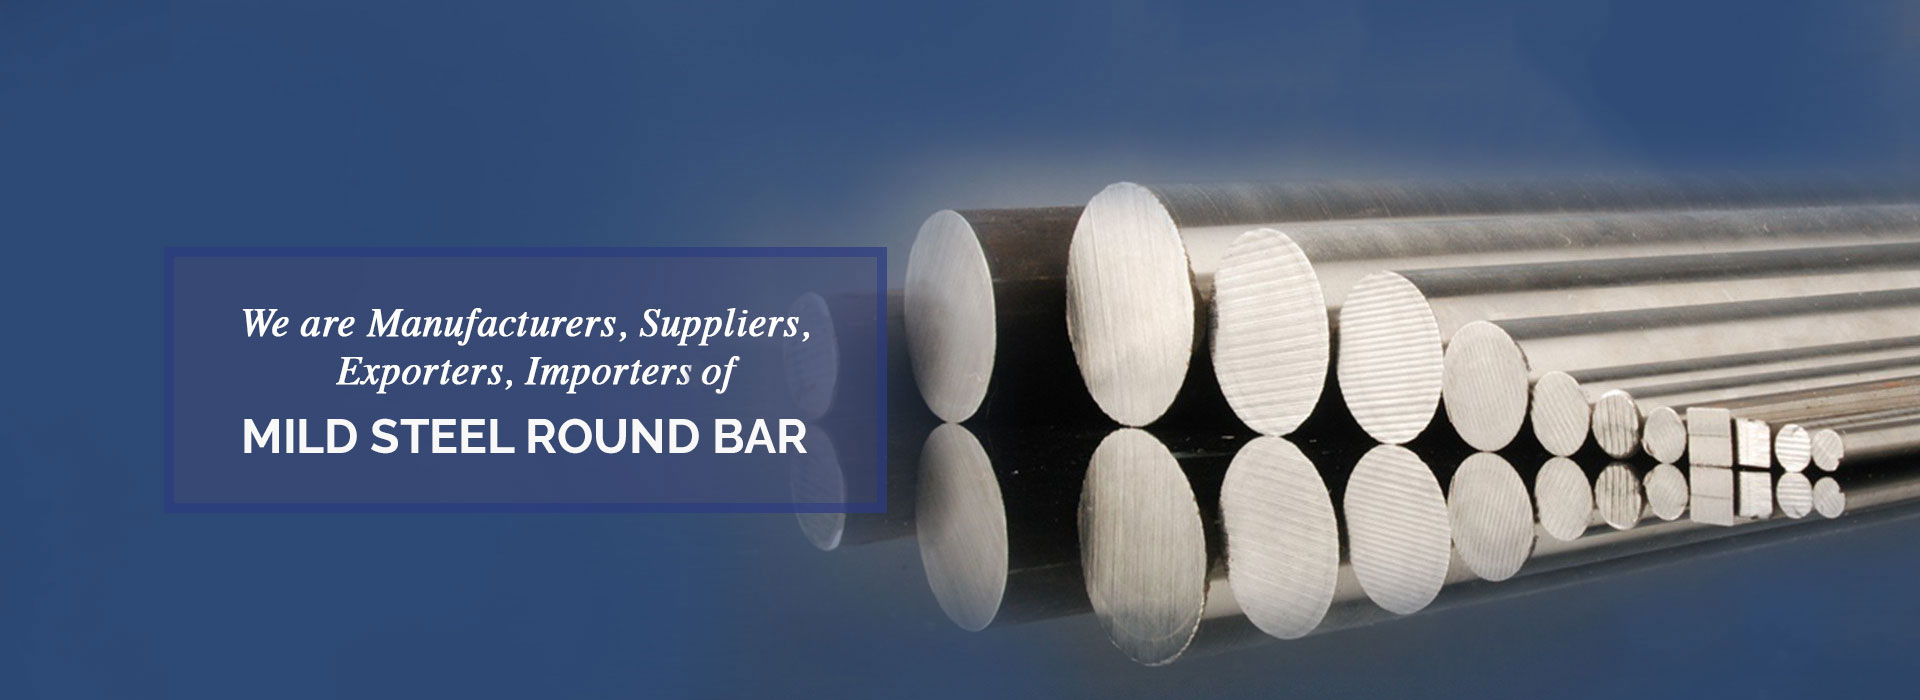 Mild Steel Round Bar Manufacturers in Usa